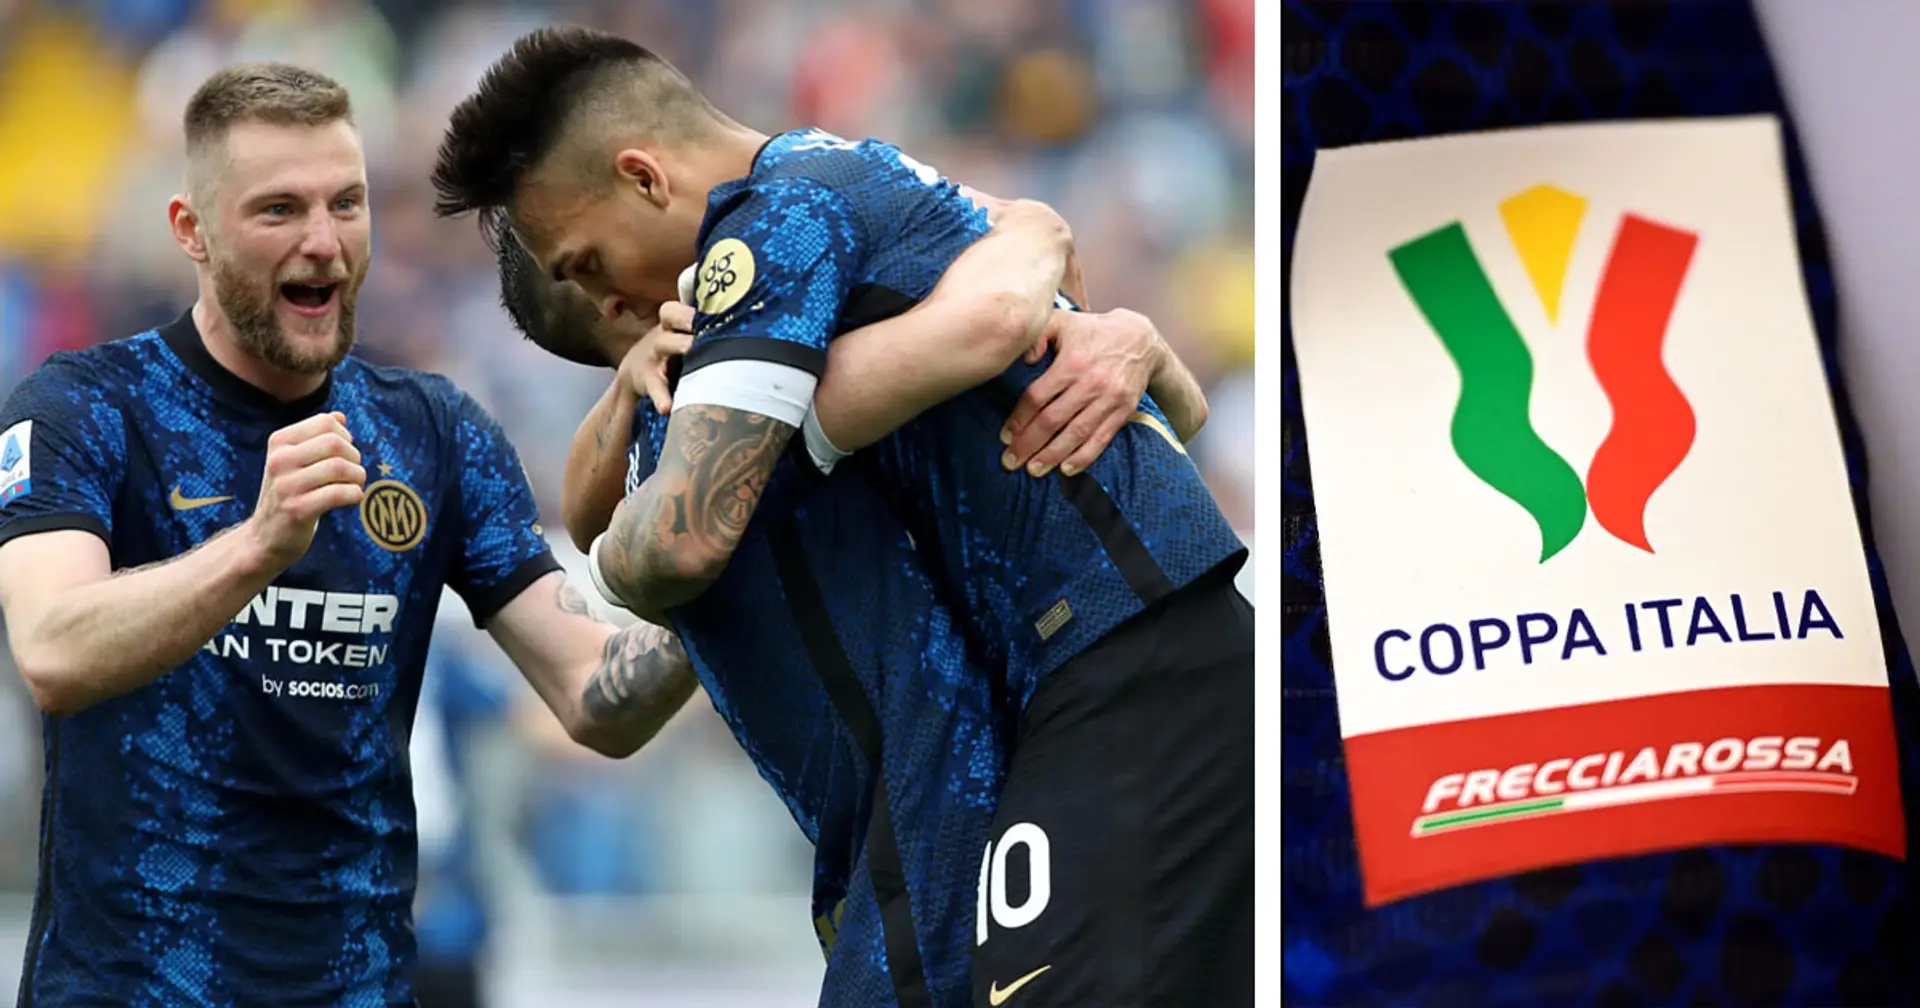 La Coppa Italia come spinta decisiva per l'Inter: può essere la ciliegina sulla torta per i nerazzurri